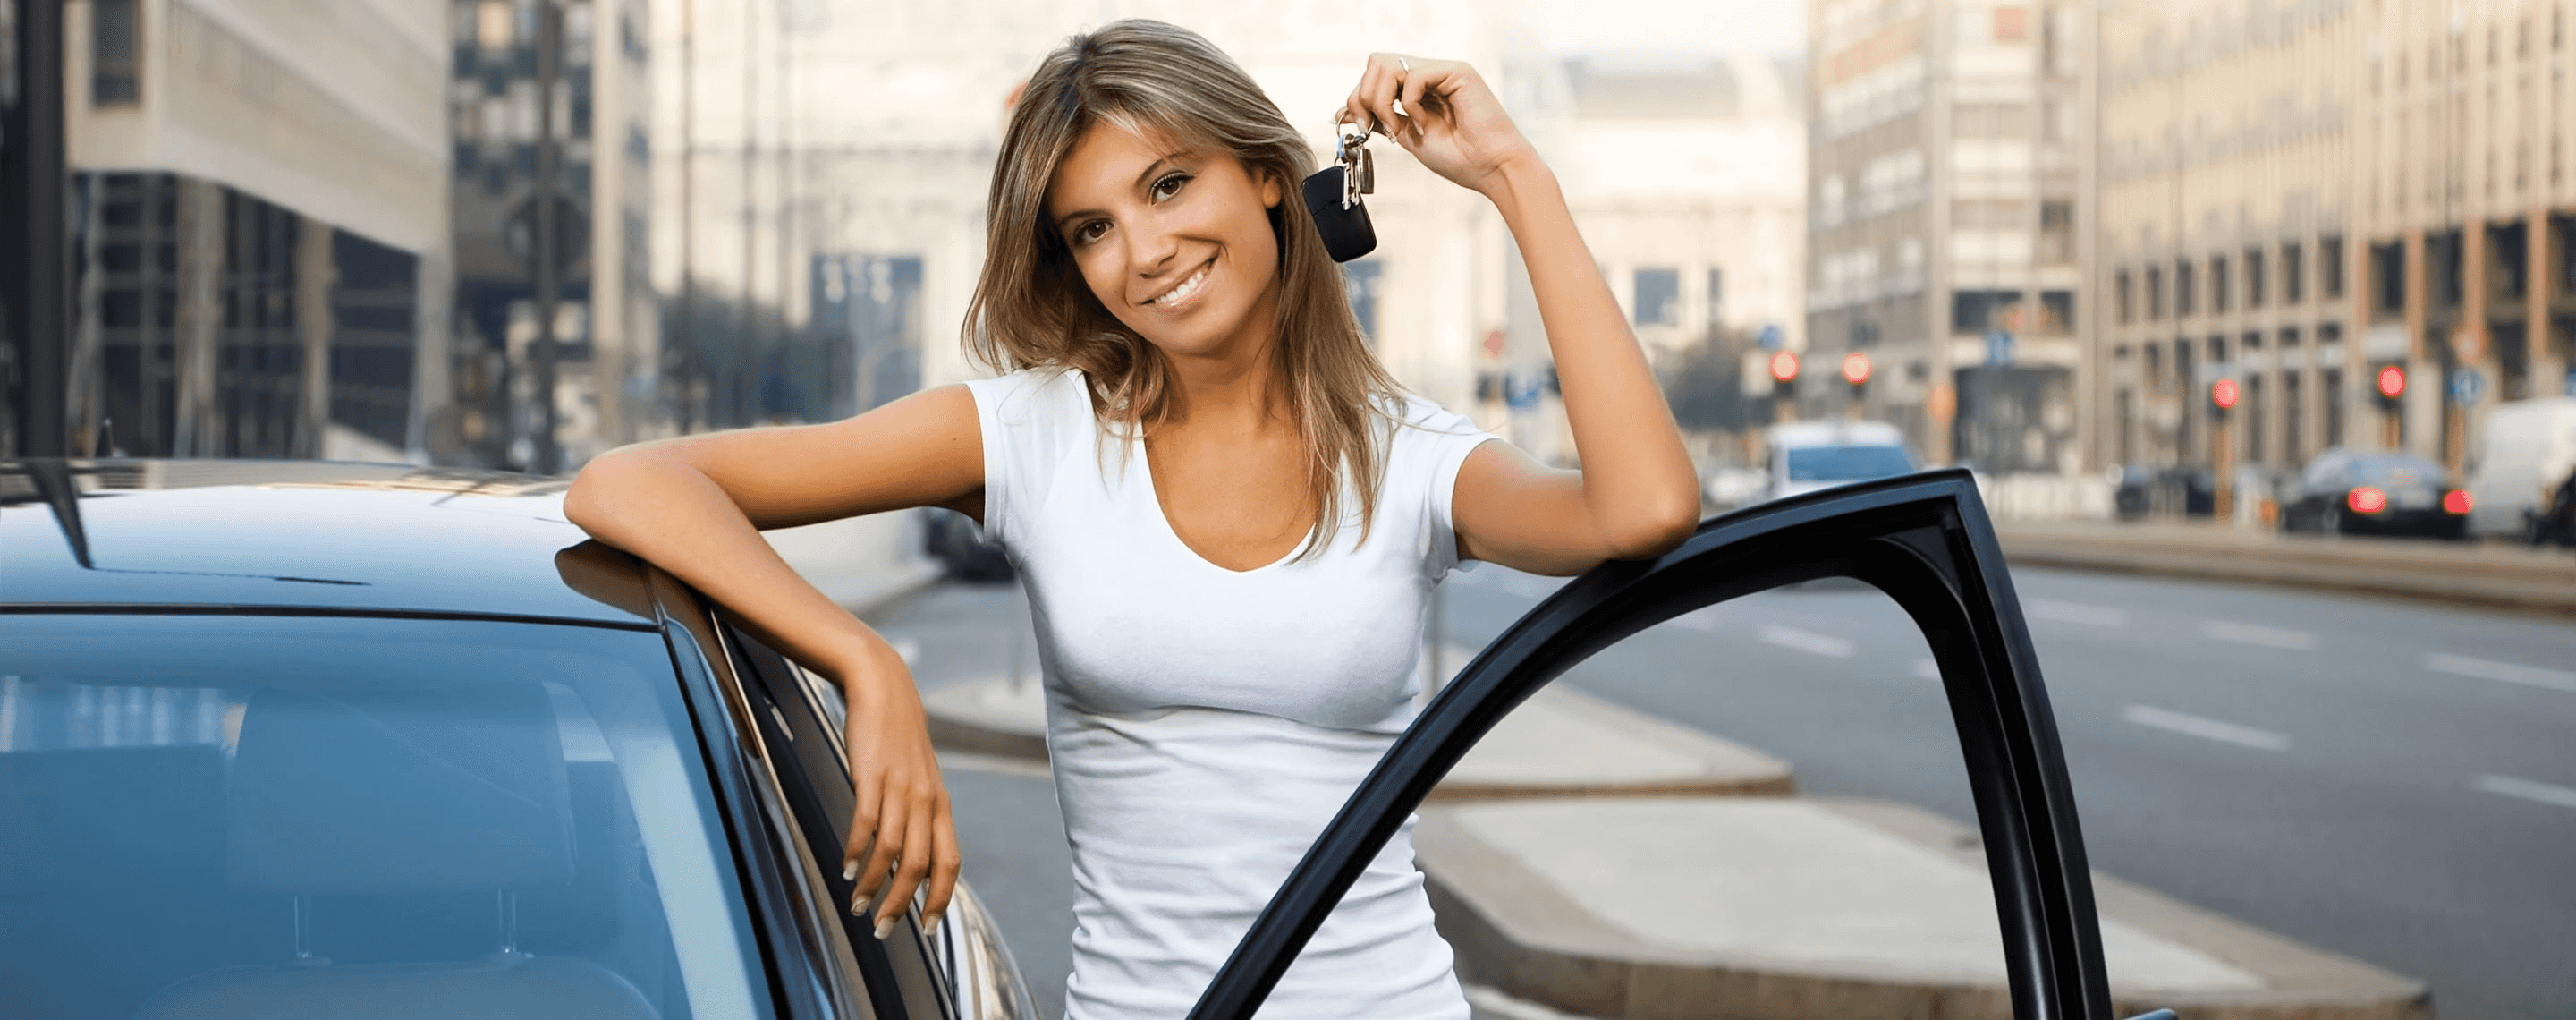 Frau mit Autoschlüssel steht lächelnd neben Auto